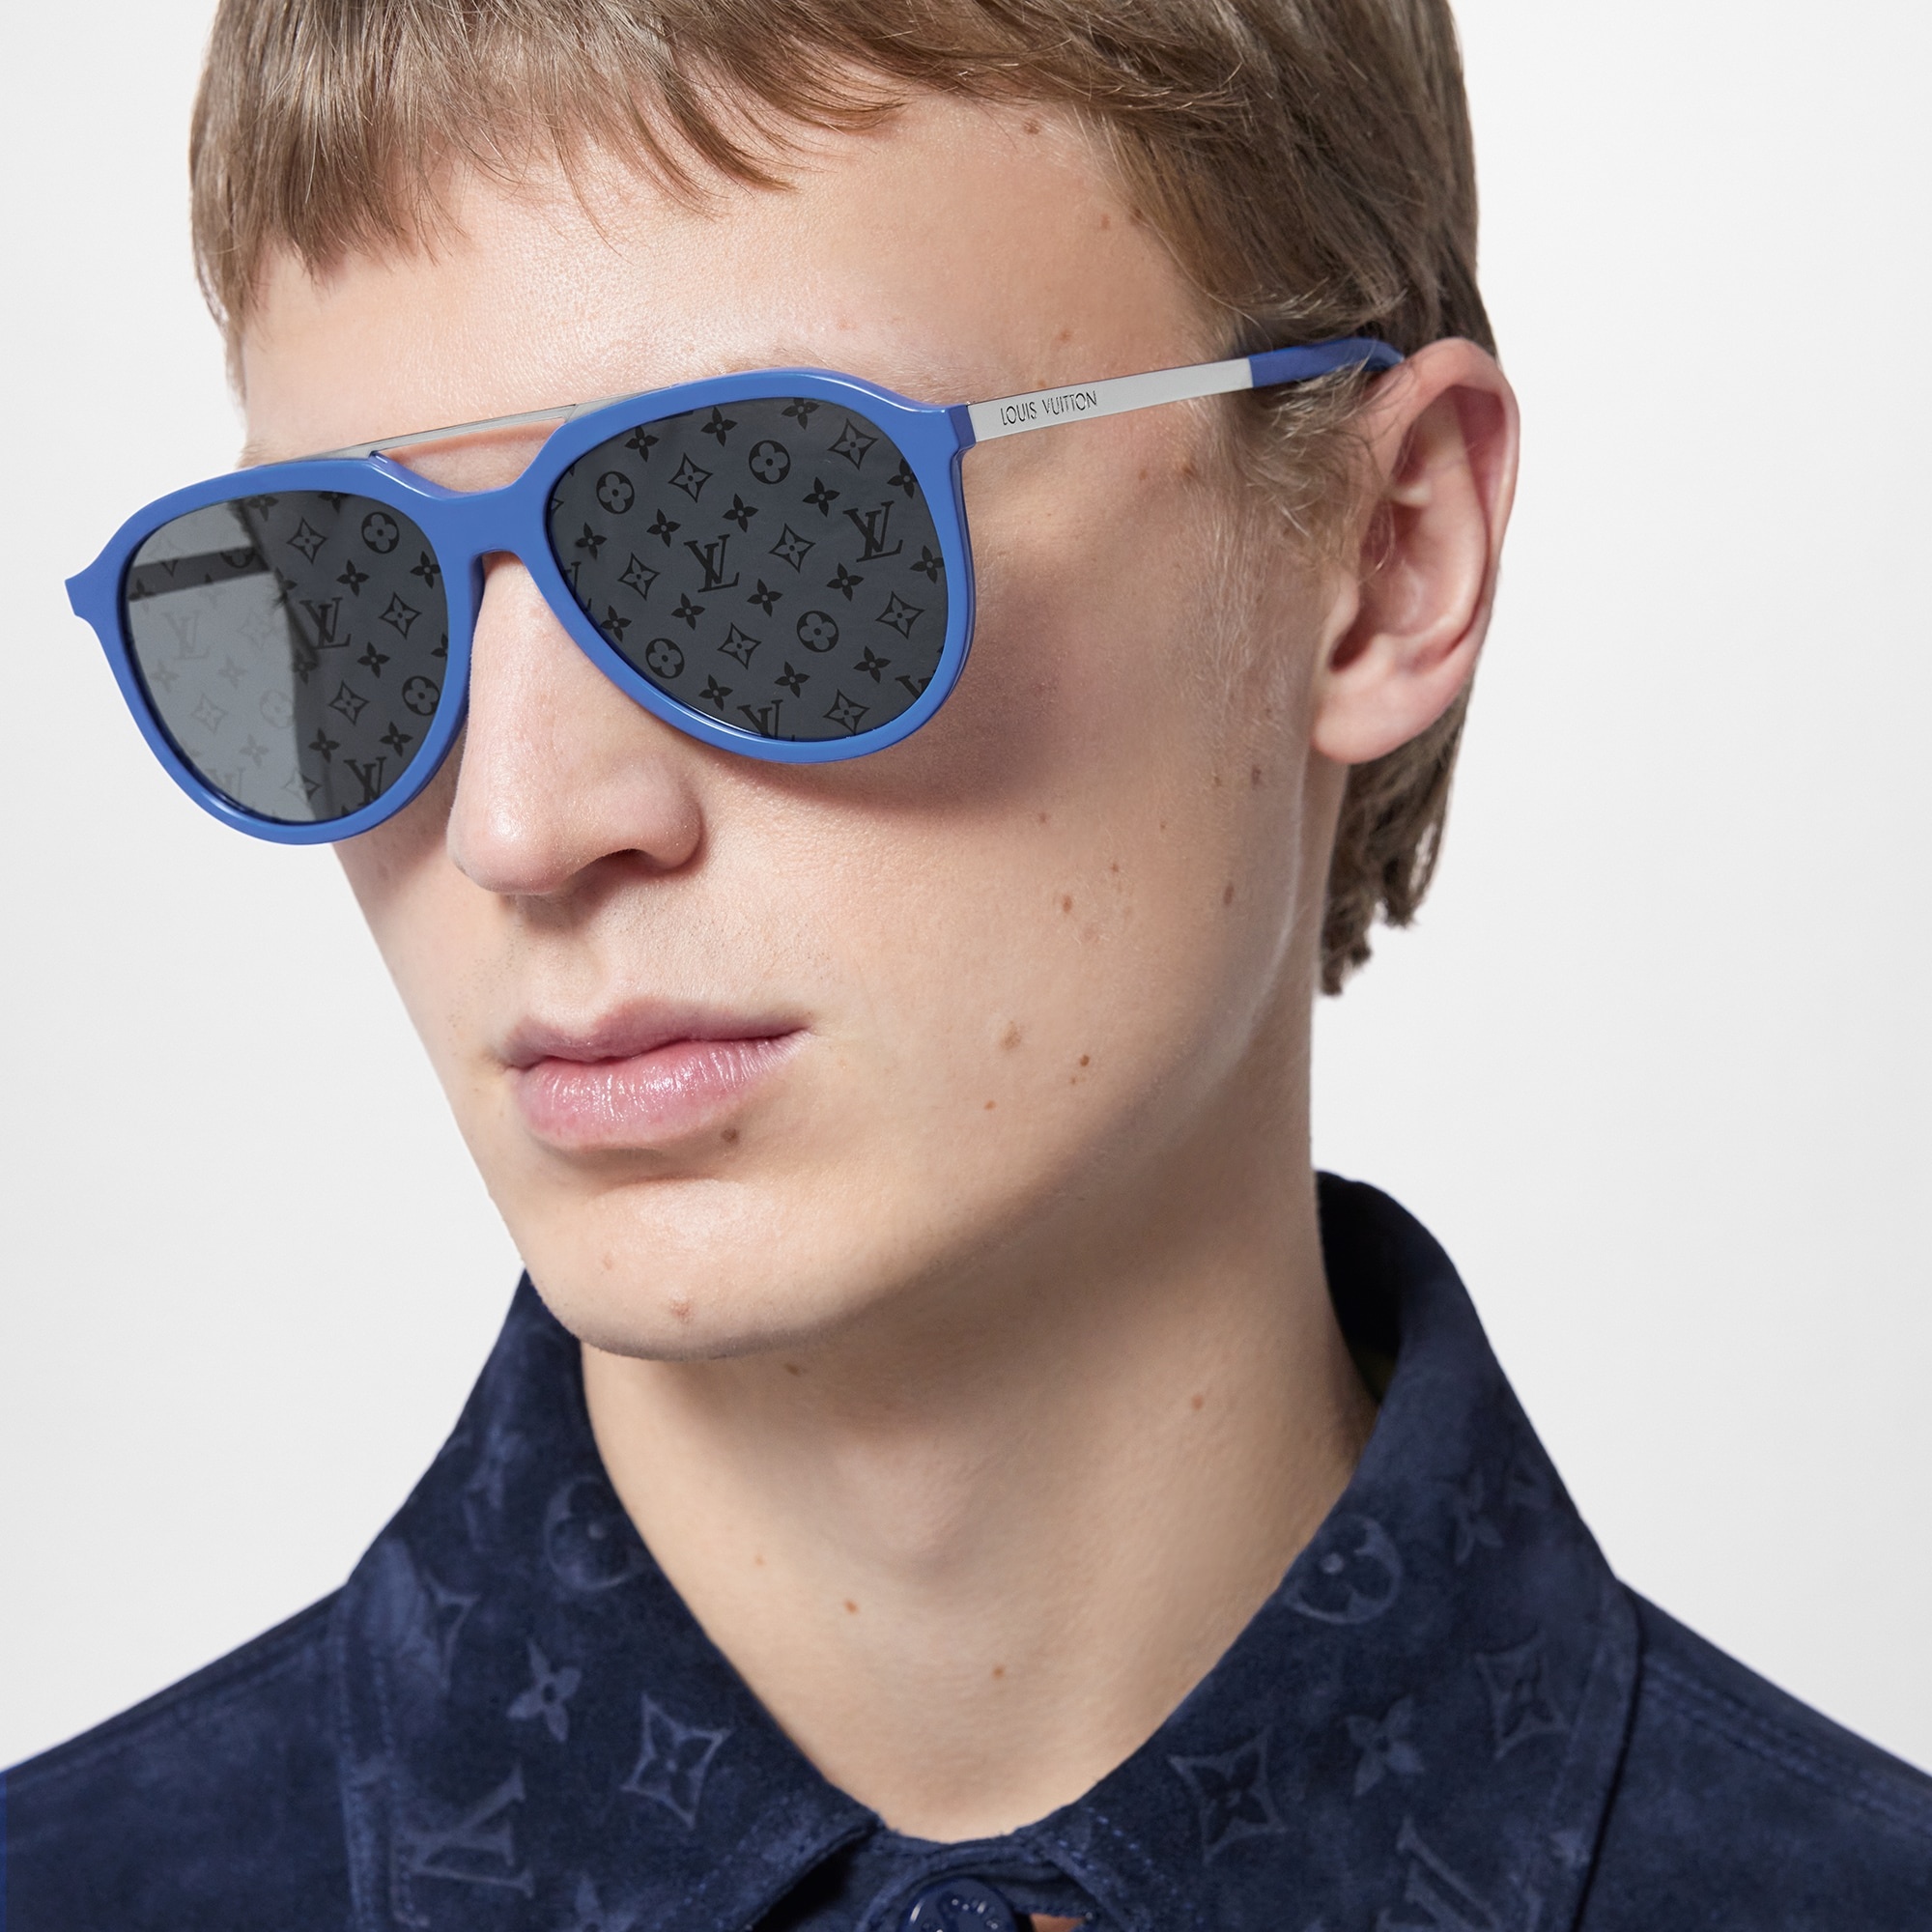 Louis Vuitton Mix It Up Round Sunglasses Blue Acetate. Size U